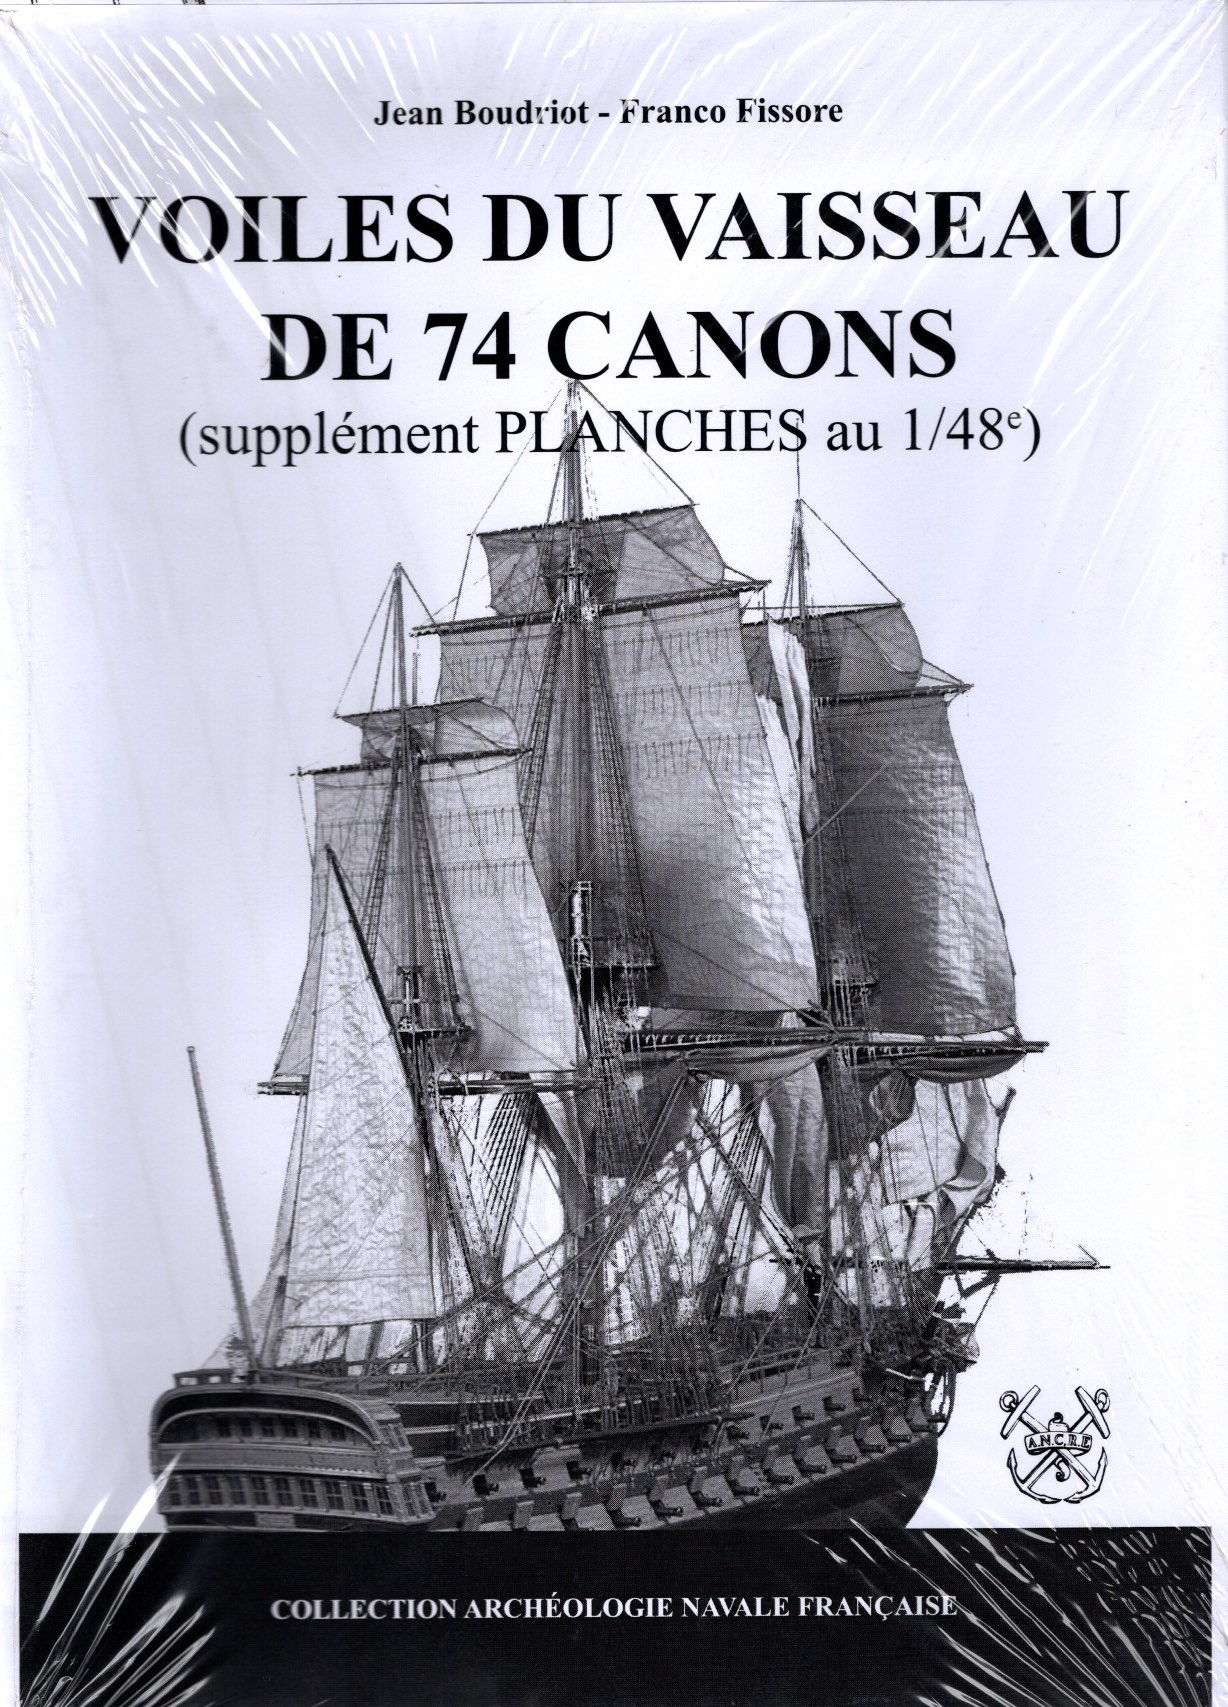 74 cannpns - voiles du vaisseau (planches 1/48)